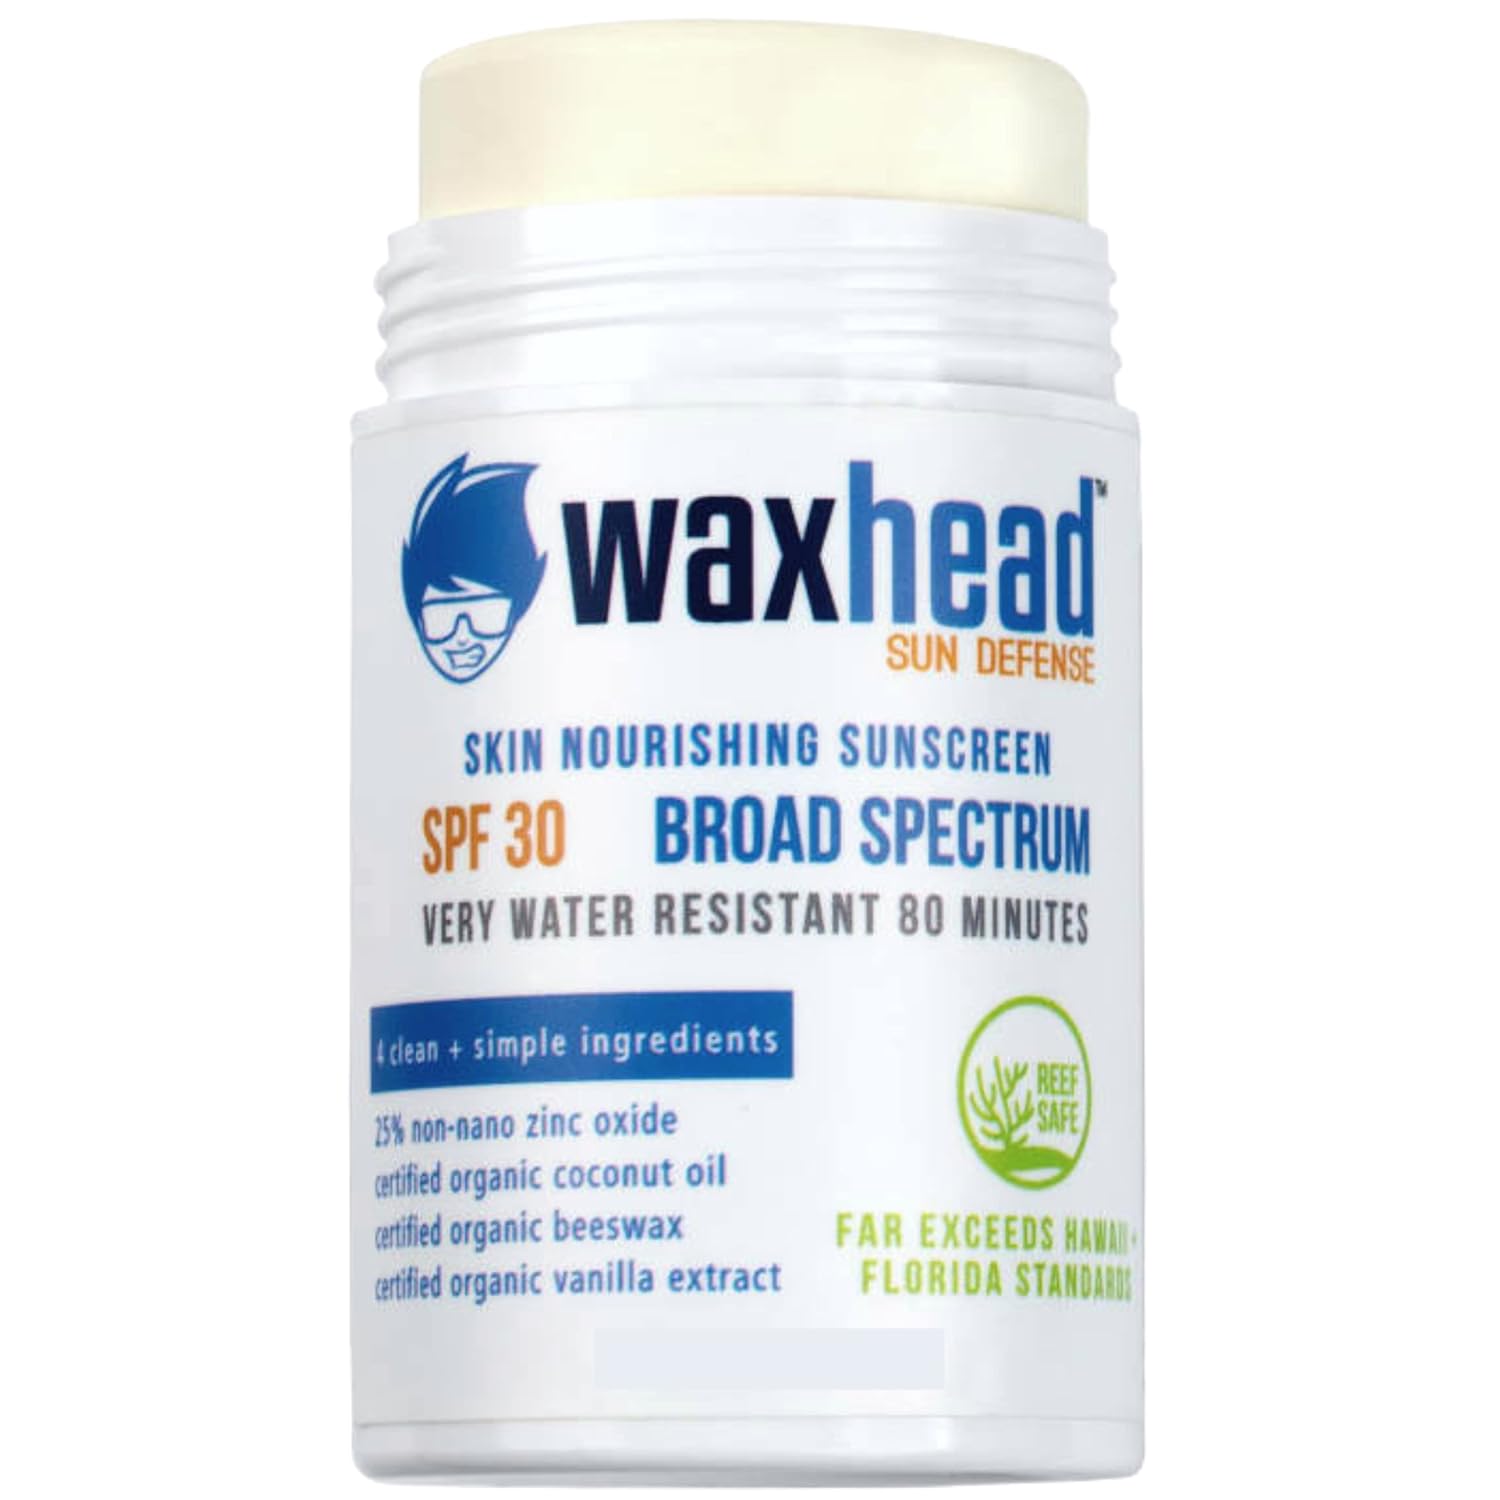 Waxhead Reef Safe Sunscreen